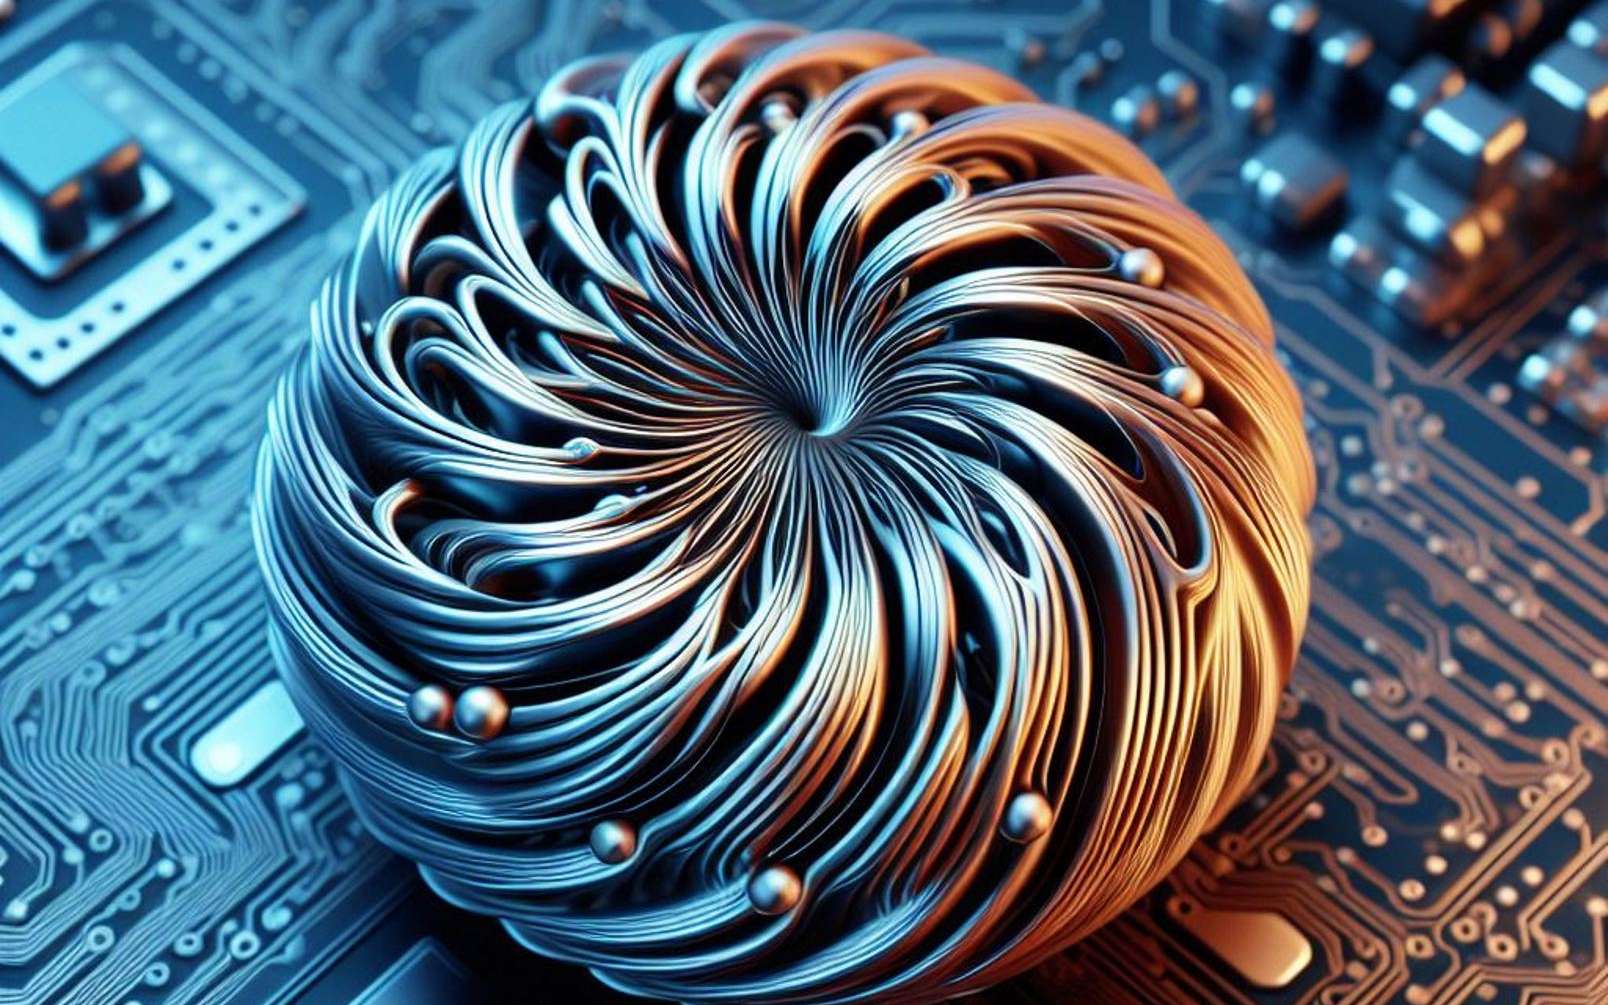 Les skyrmions, des particules magnétiques de plus en plus prometteuses pour les ordinateurs du futur